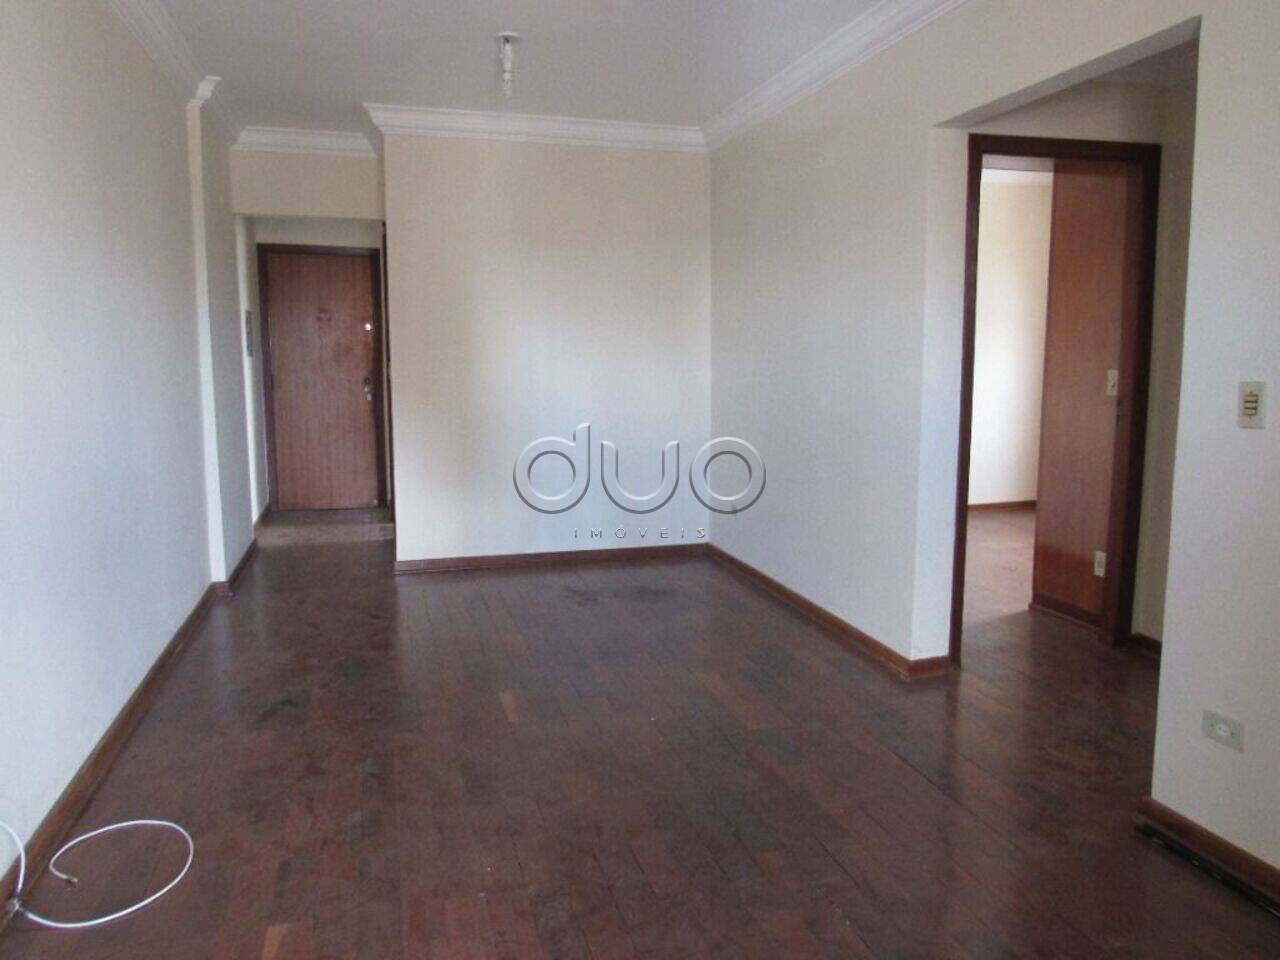 Apartamento com 2 dormitórios à venda, 62 m² por R$ 295.000 - São Judas - Piracicaba/SP